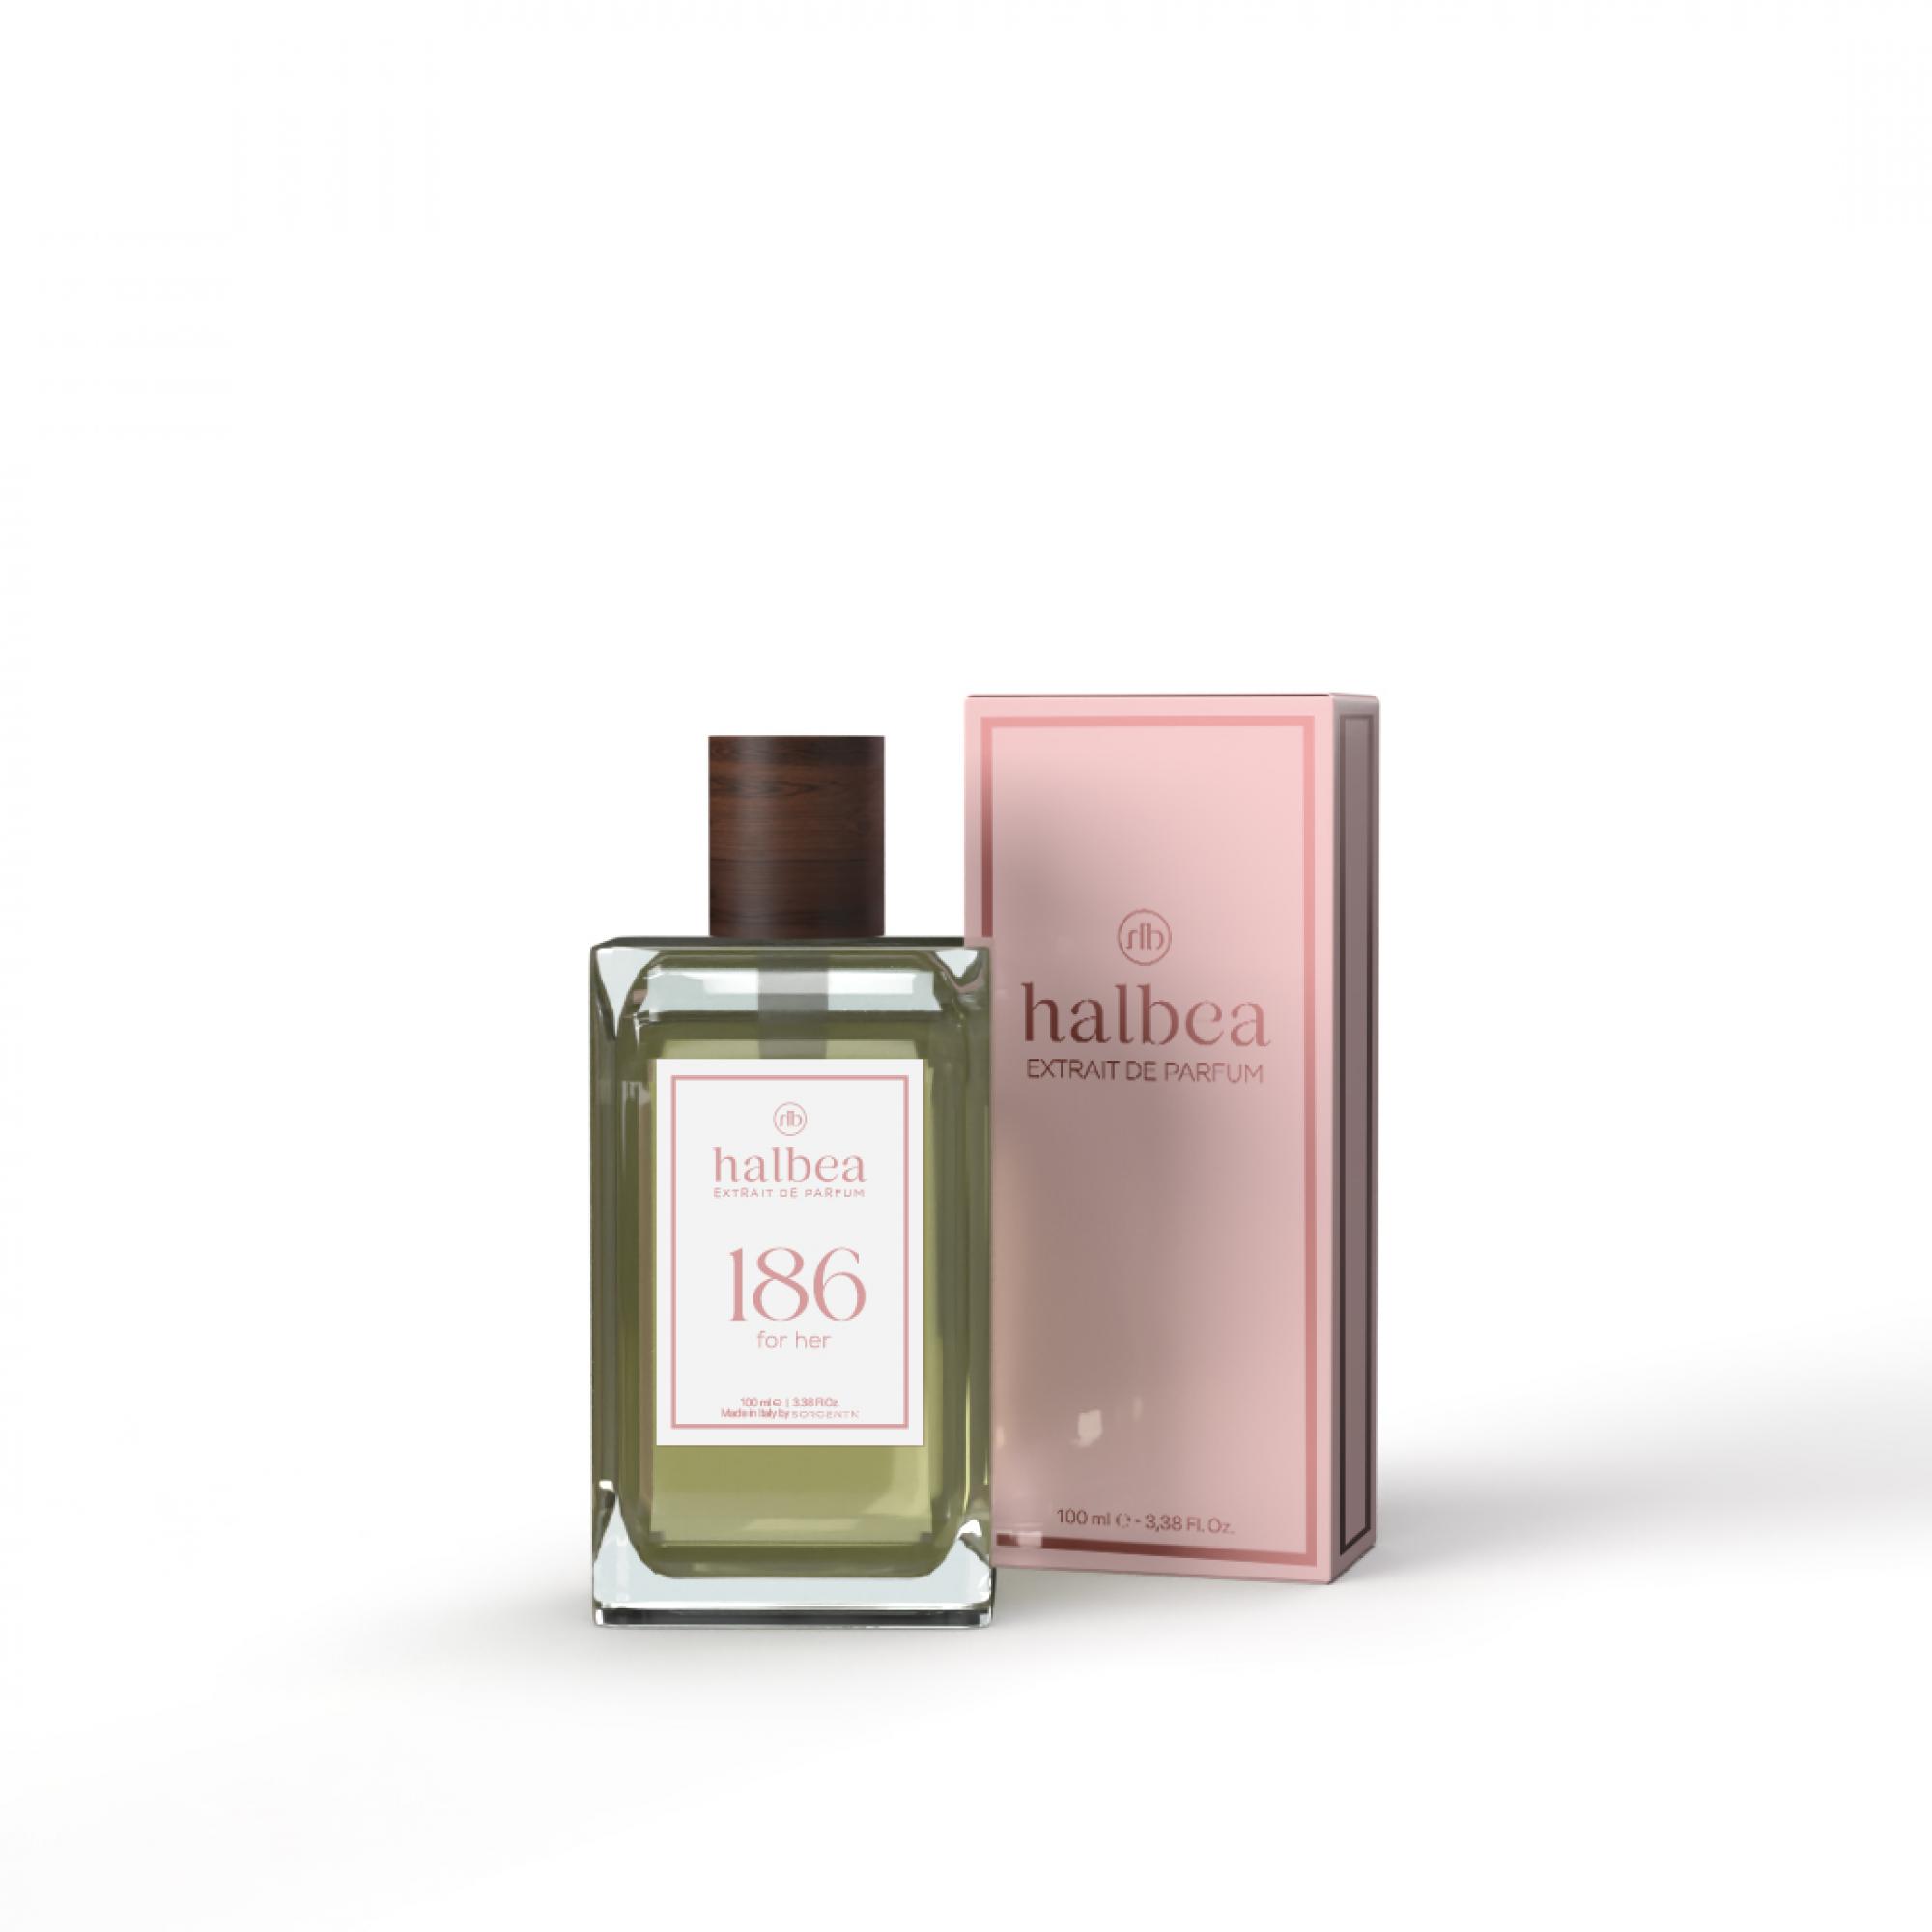 Halbea Parfum Nr. 186 insp. by Crystal Noir Versace 100ml